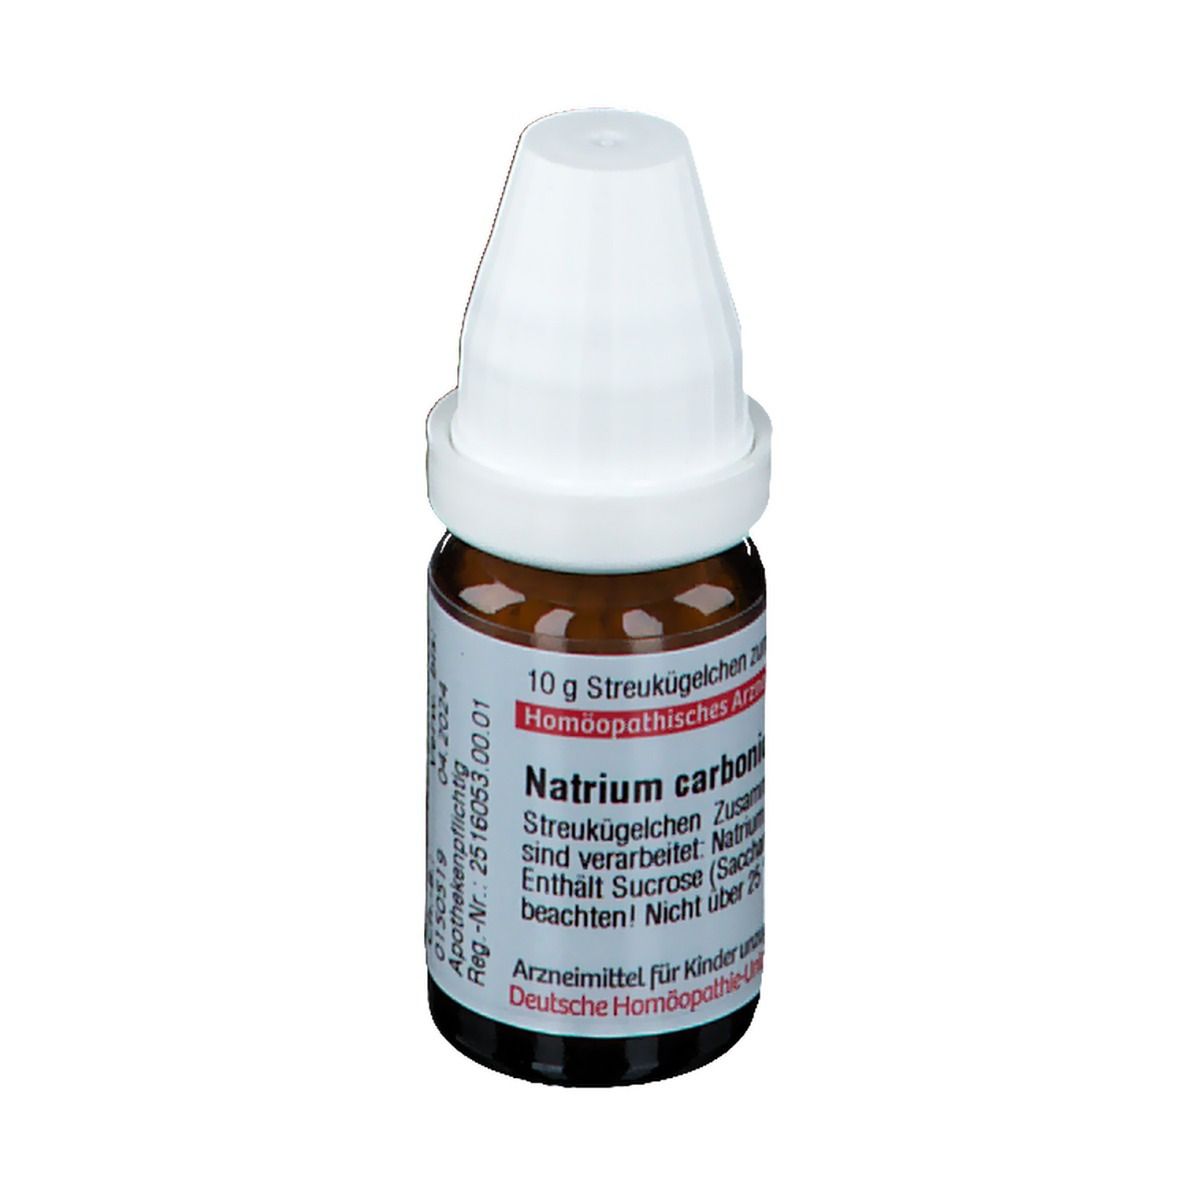 DHU Natrium Carbonicum C30